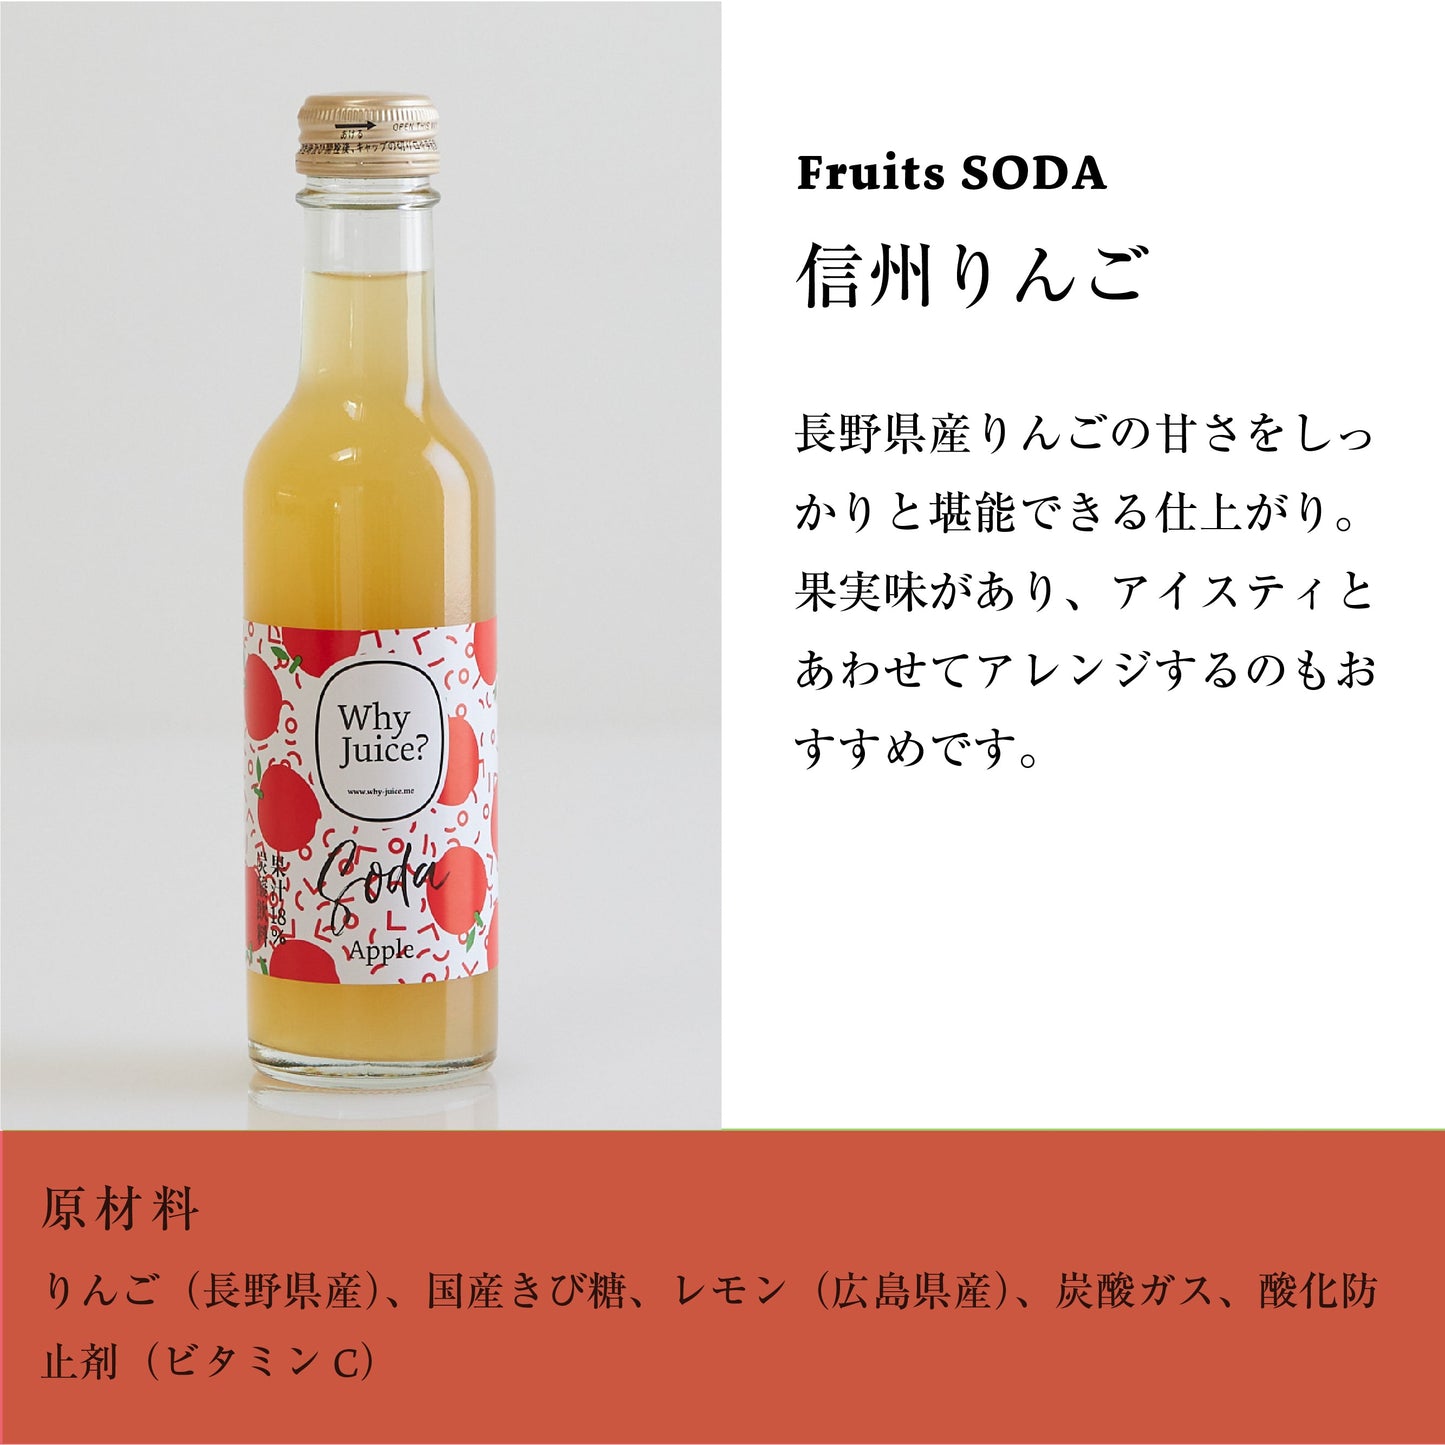 Fruits SODA 信州りんご (30本入)